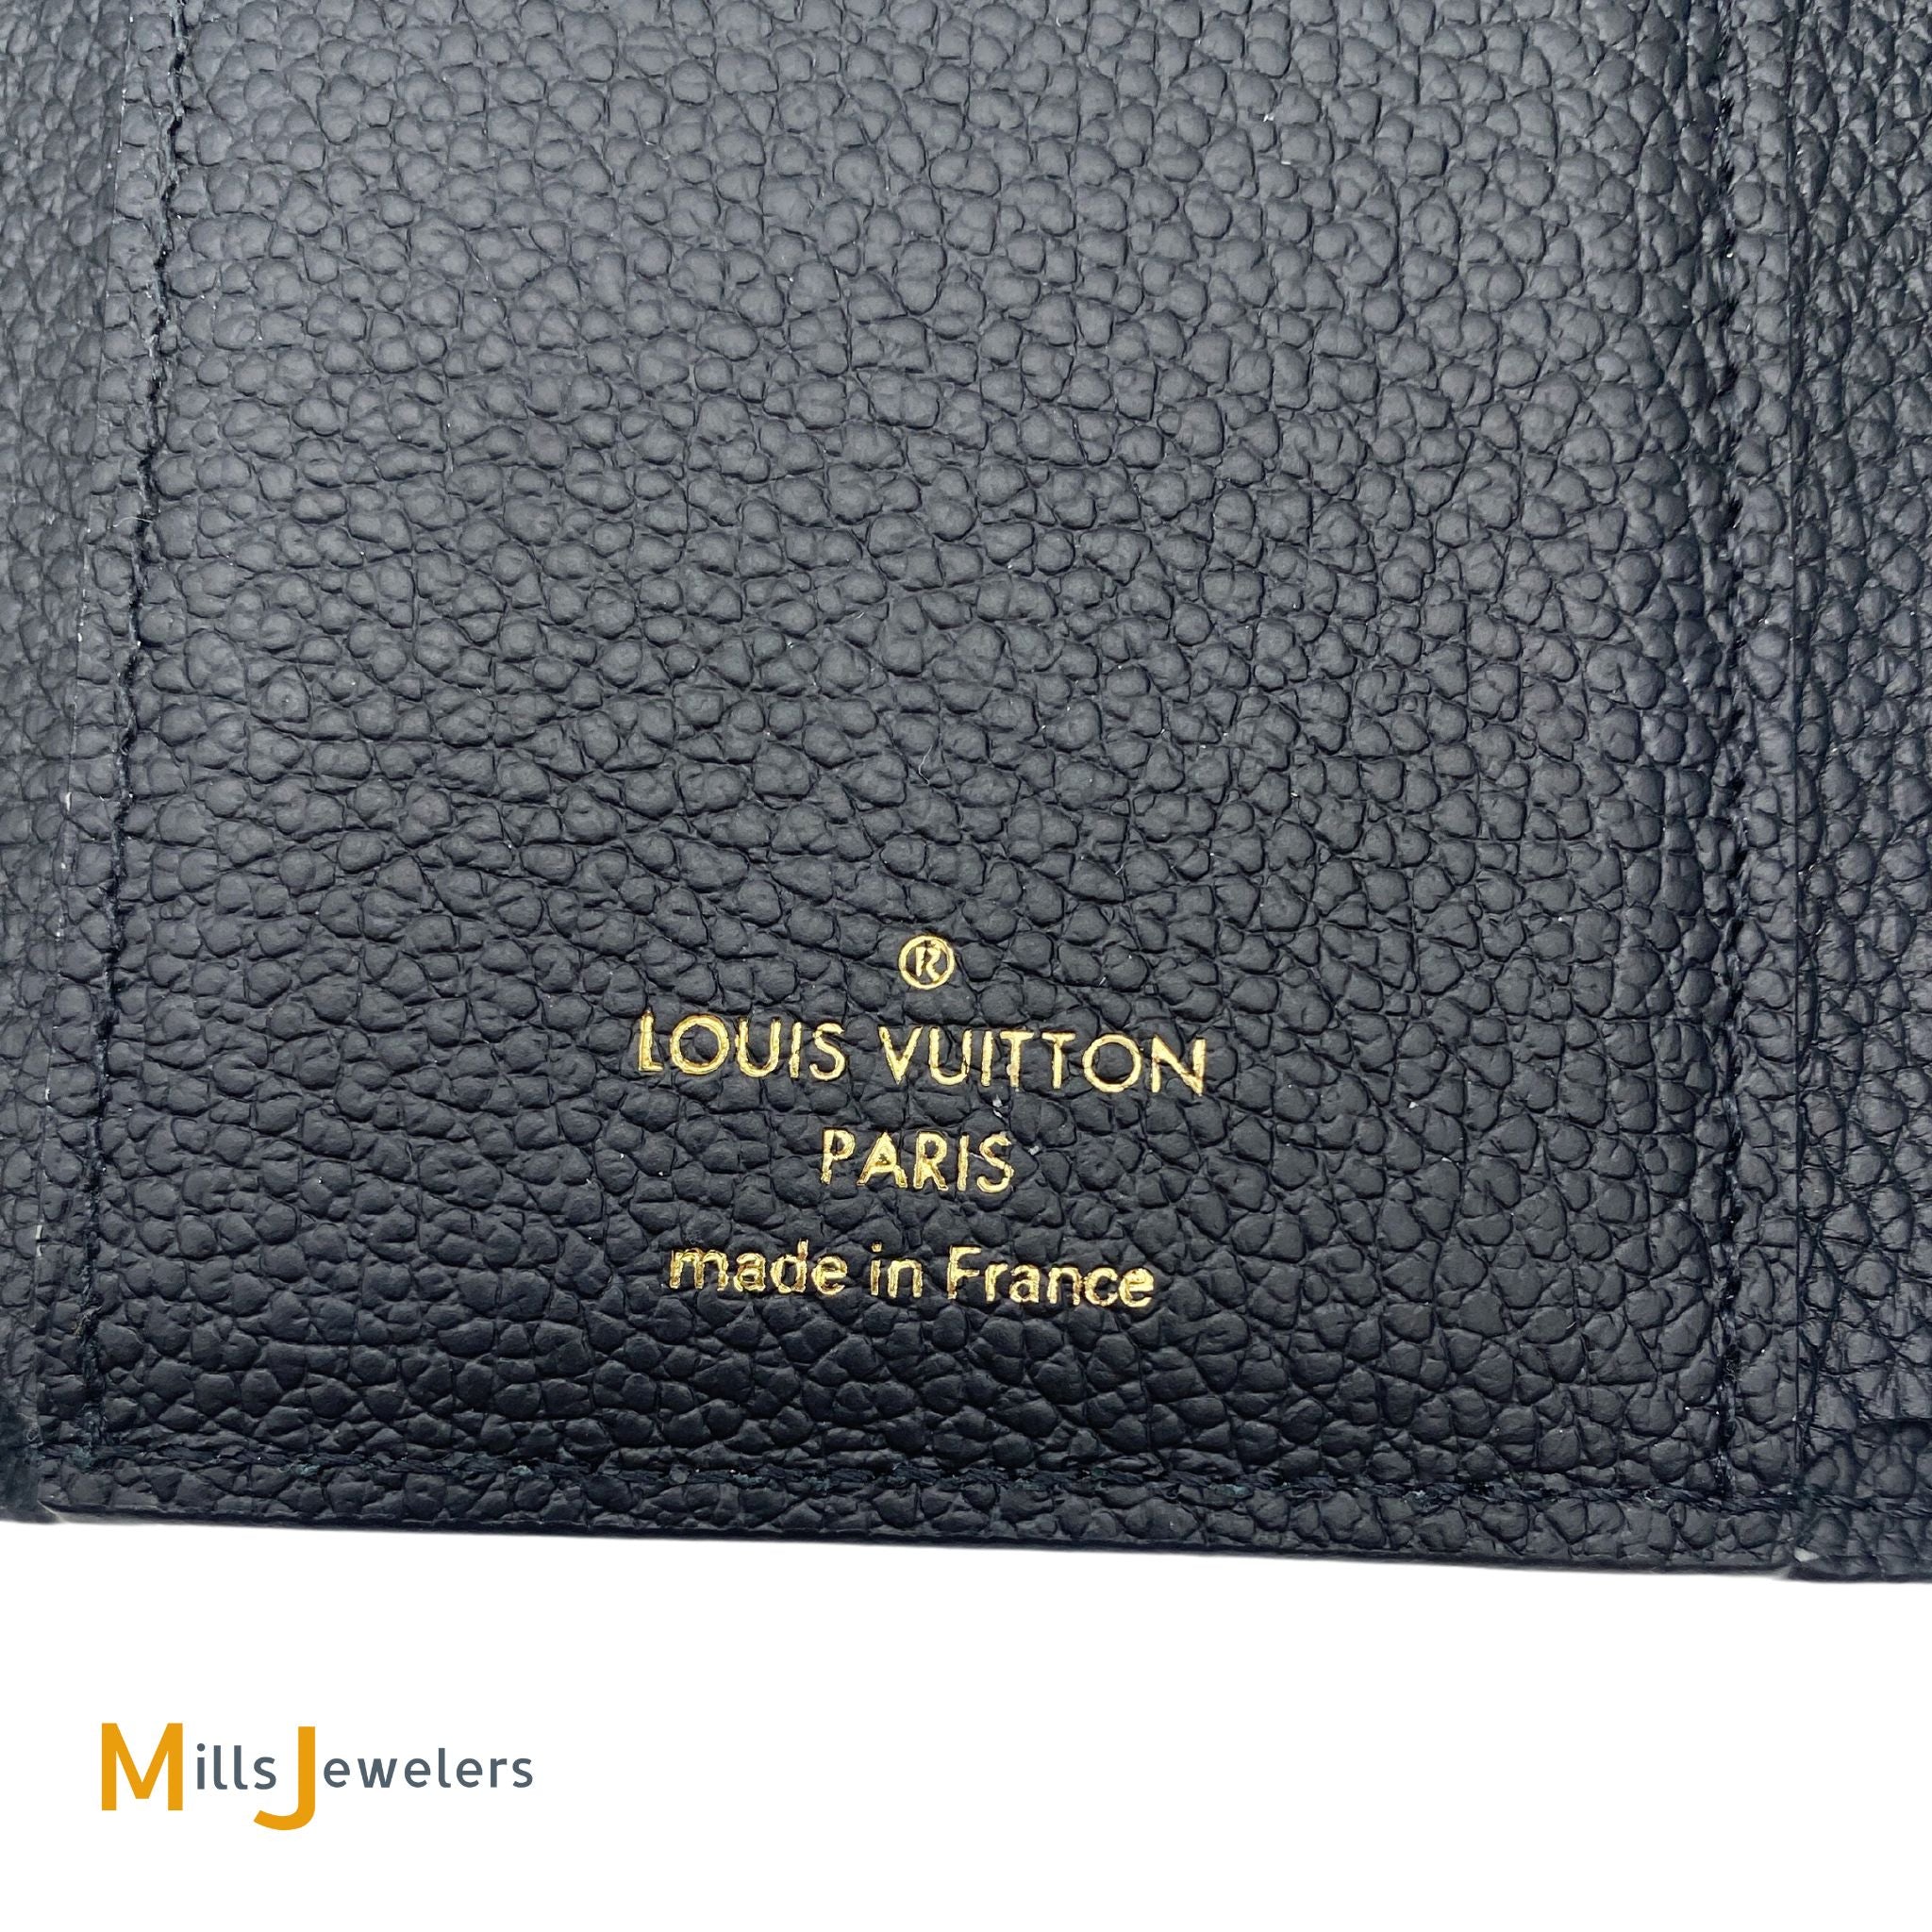 Louis Vuitton Victorine Monogram Empreinte Leather Wallet